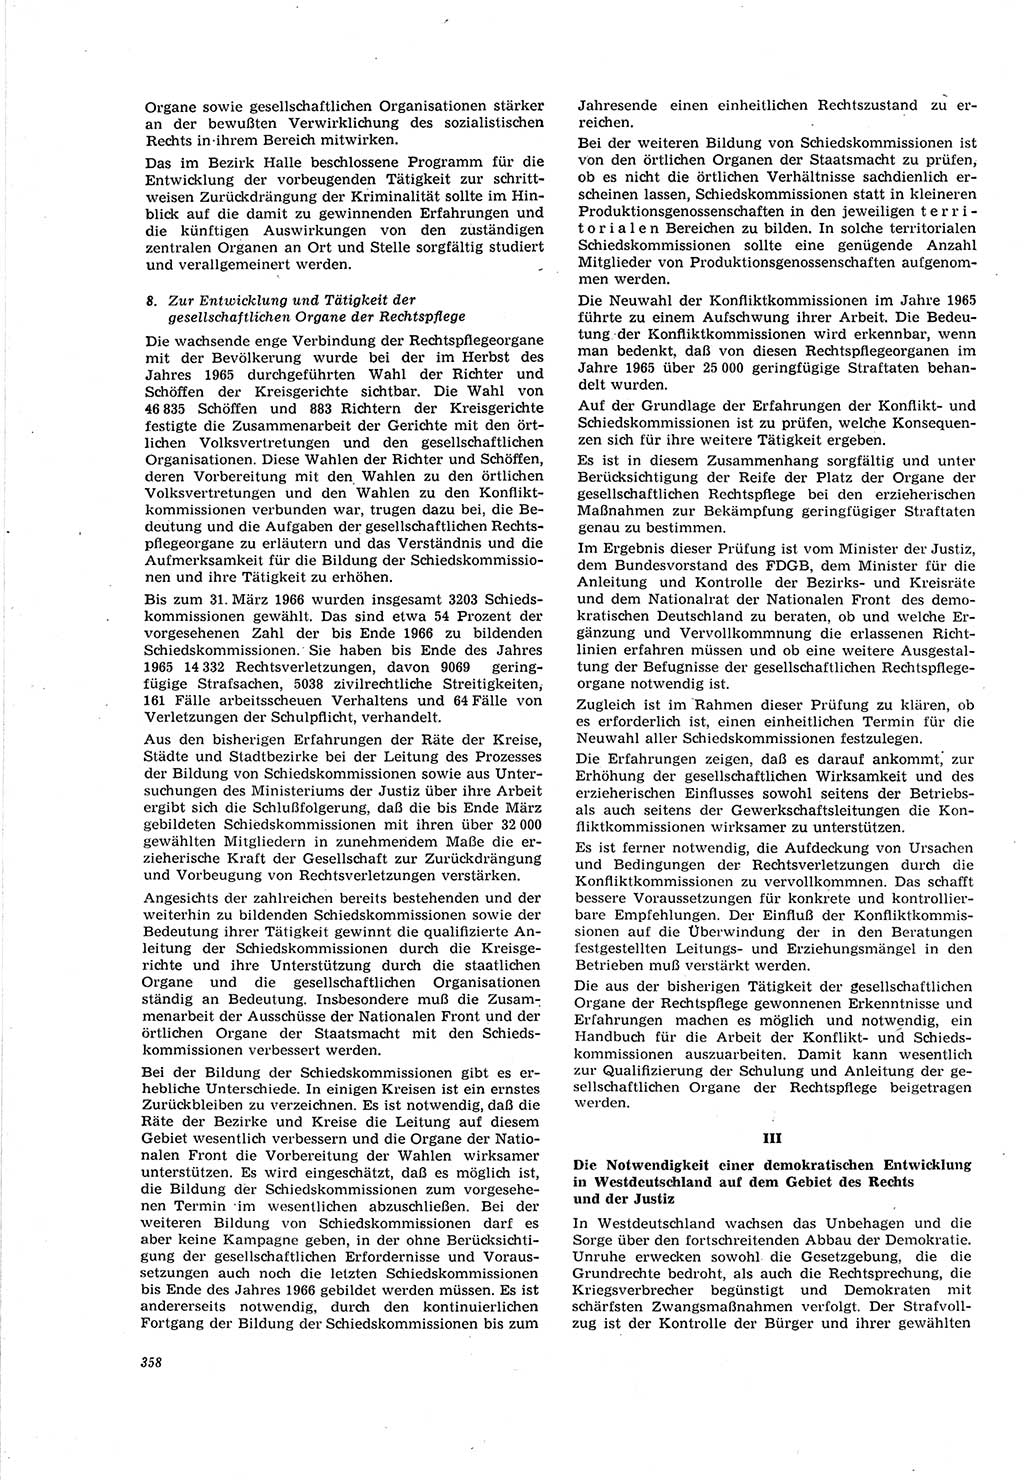 Neue Justiz (NJ), Zeitschrift für Recht und Rechtswissenschaft [Deutsche Demokratische Republik (DDR)], 20. Jahrgang 1966, Seite 358 (NJ DDR 1966, S. 358)